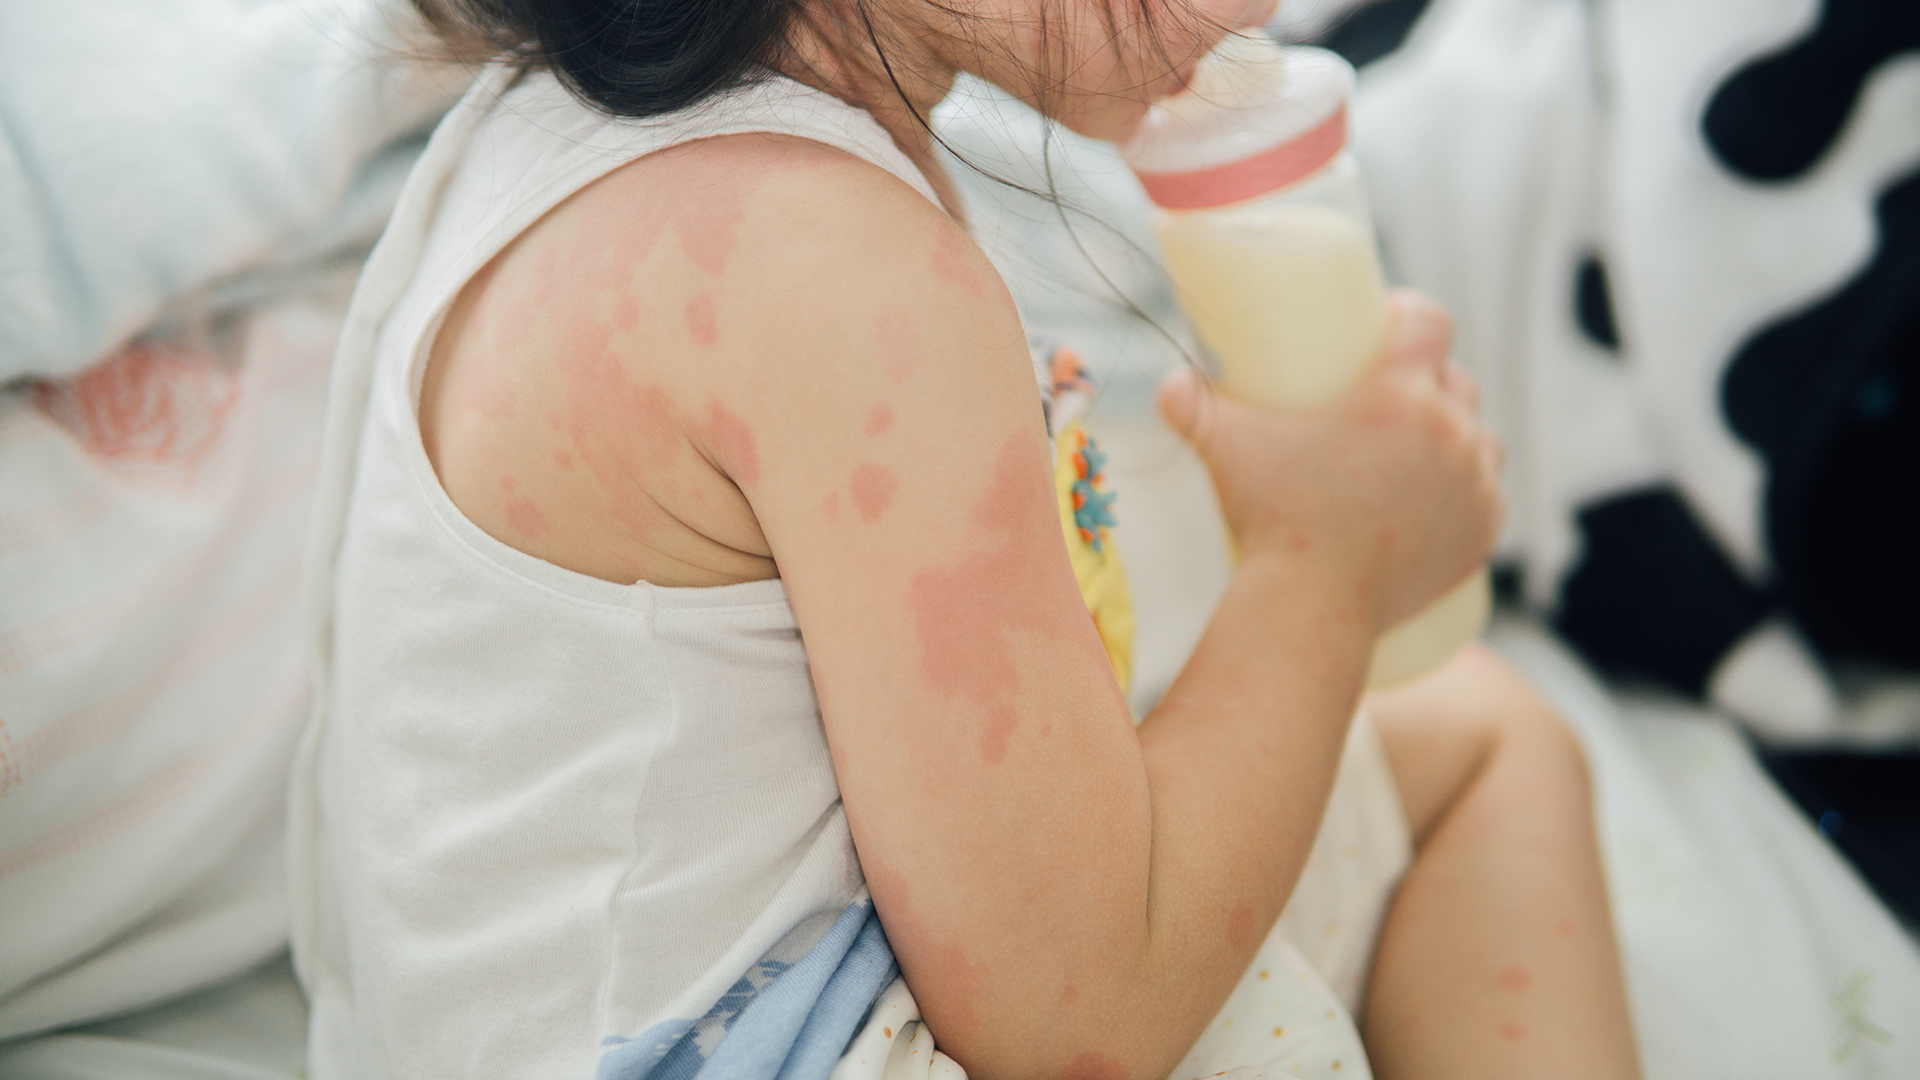 Managing allergies in childcare